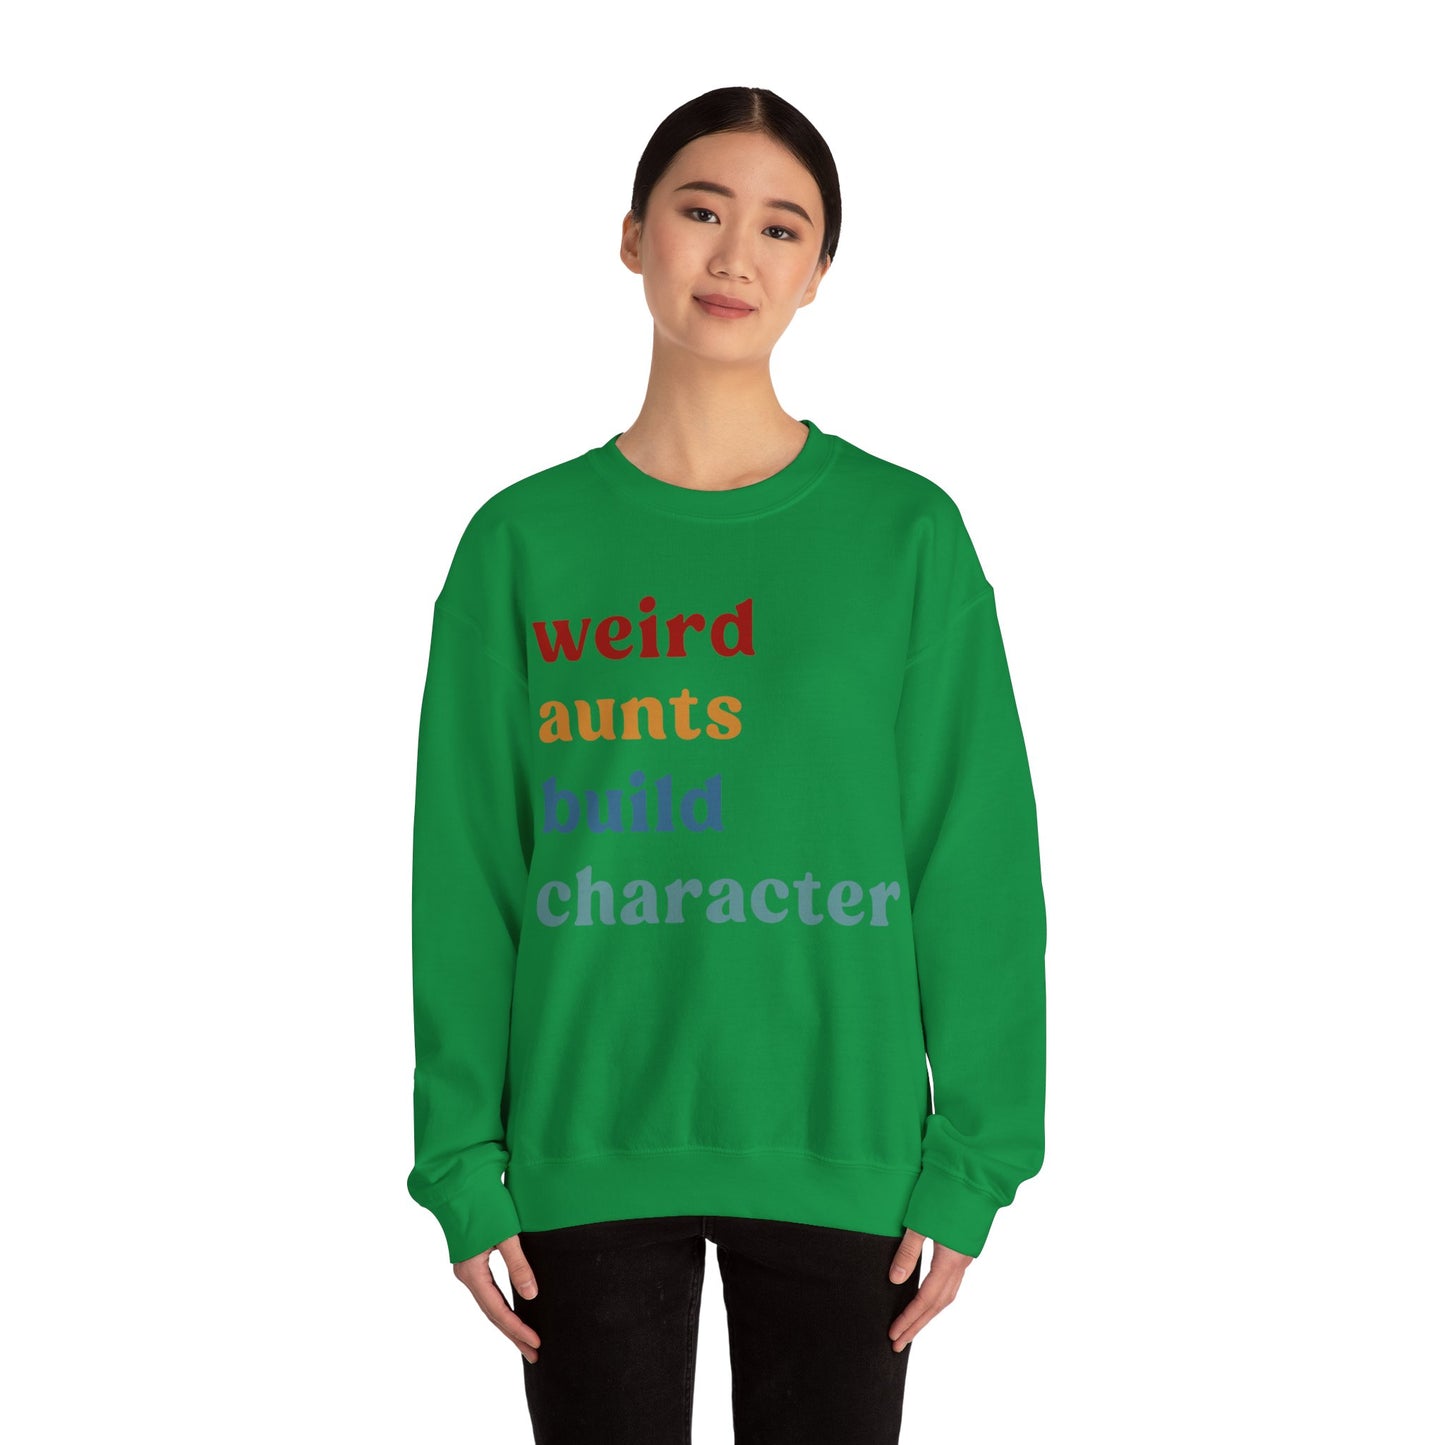 Weird Aunt Build Character Sweatshirt, Best Aunt Sweatshirt from Mom, Gift for Best Aunt, Mother's Day Gift, Retro Aunt Sweatshirt, S1123